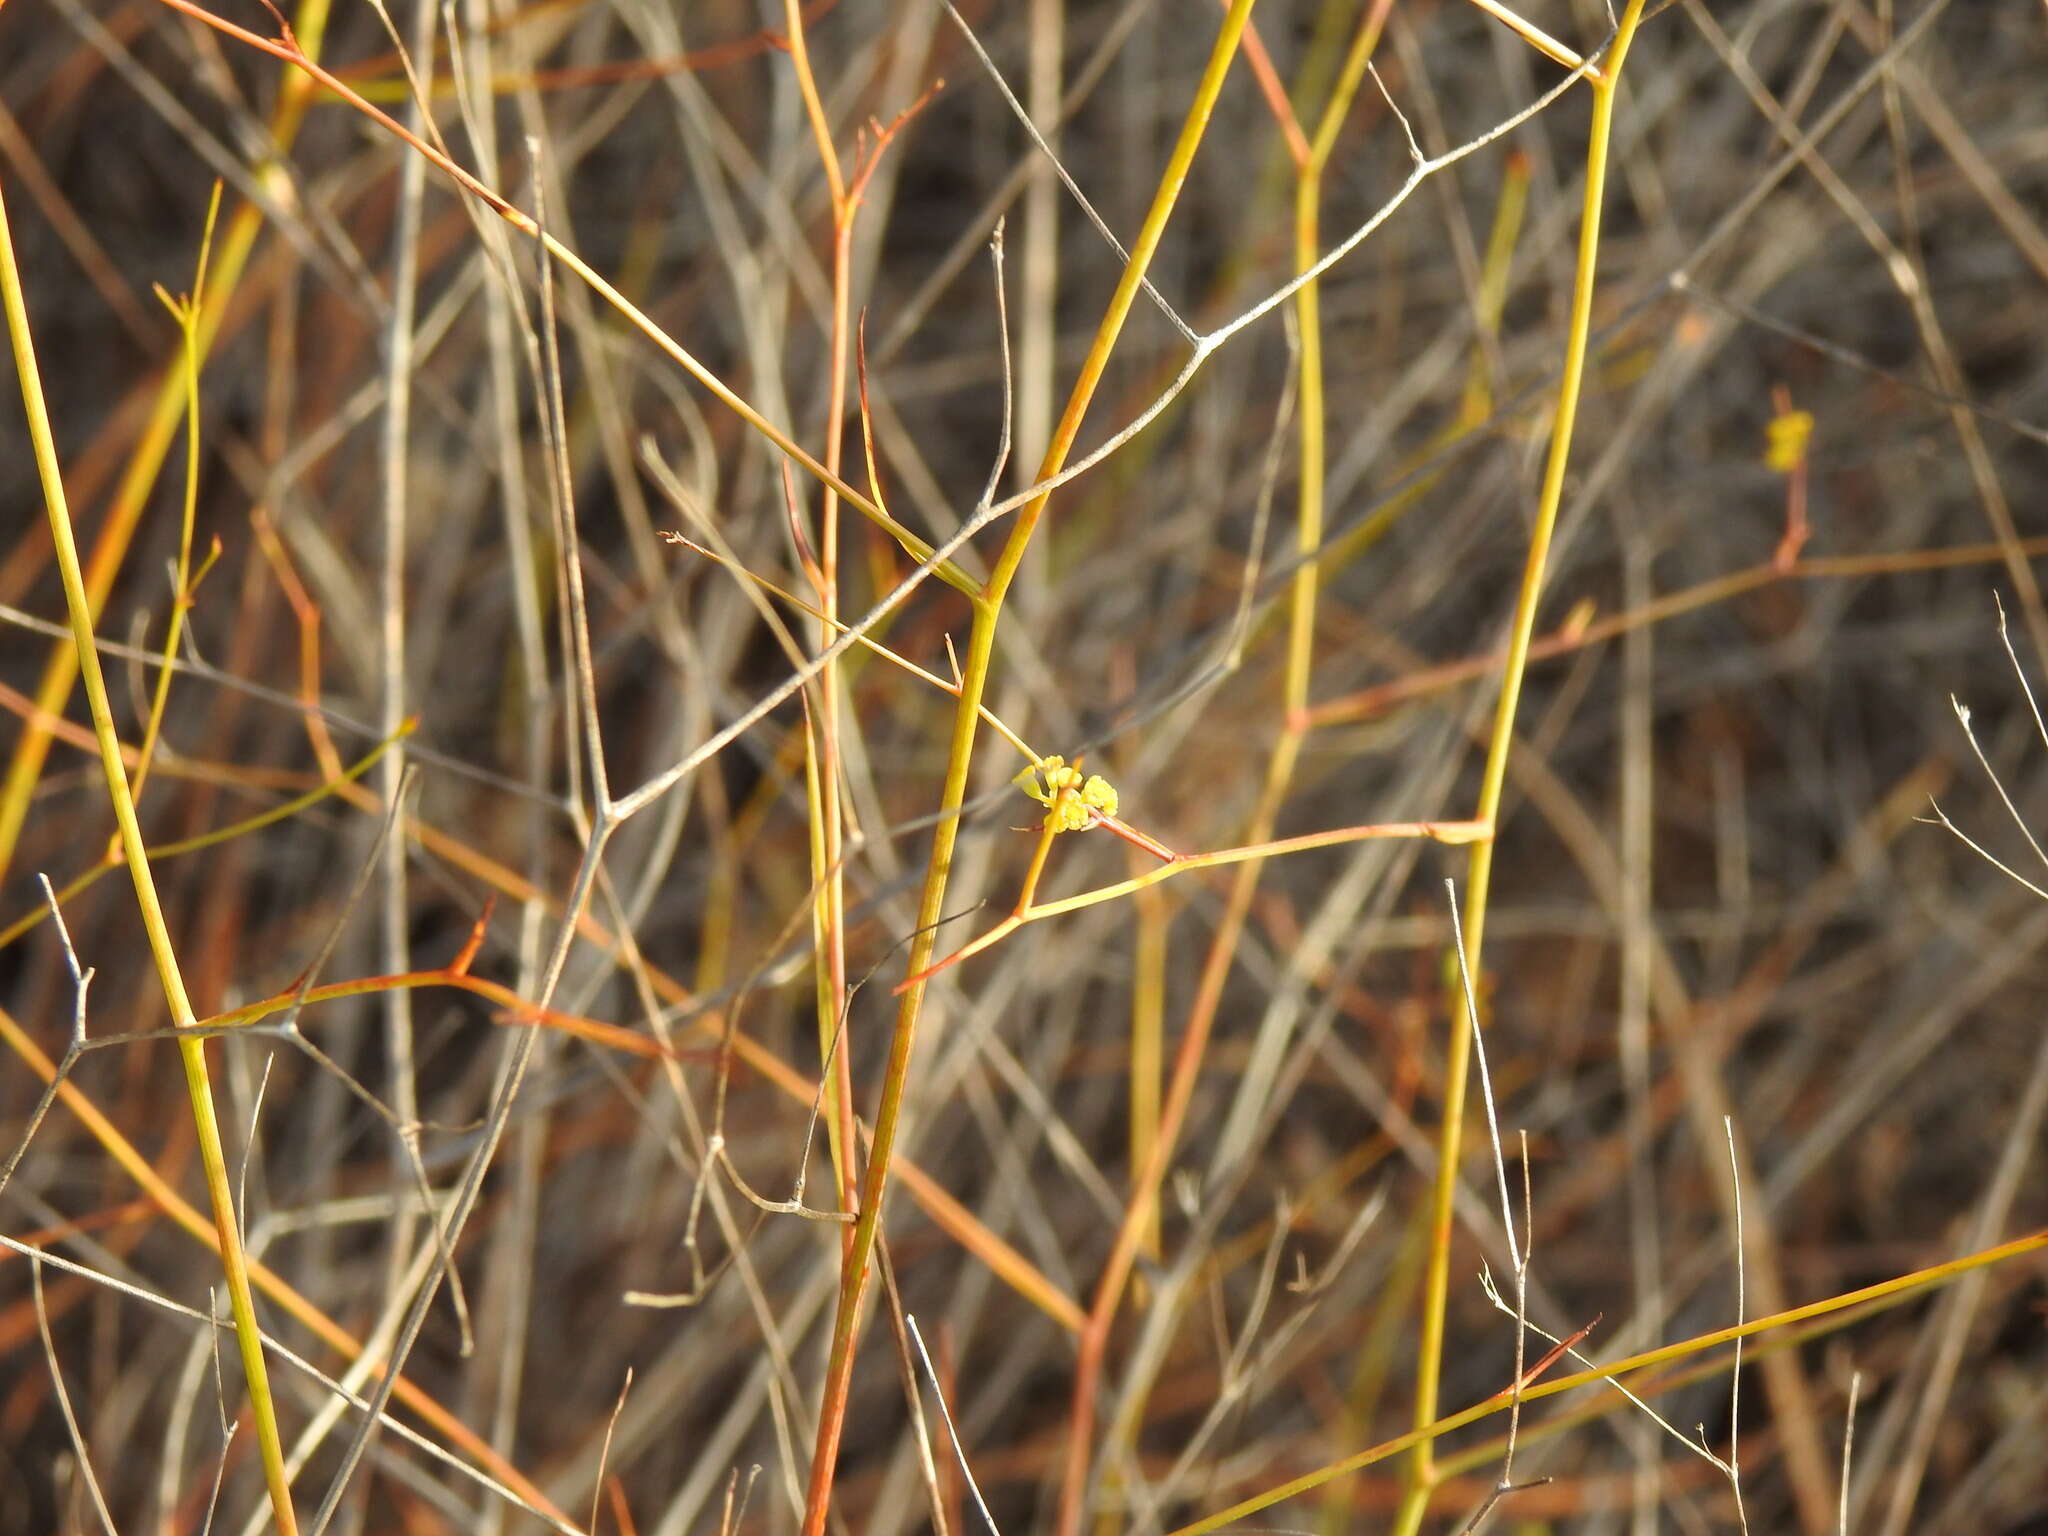 Sivun Bupleurum rigidum subsp. paniculatum (Brot.) H. Wolff kuva